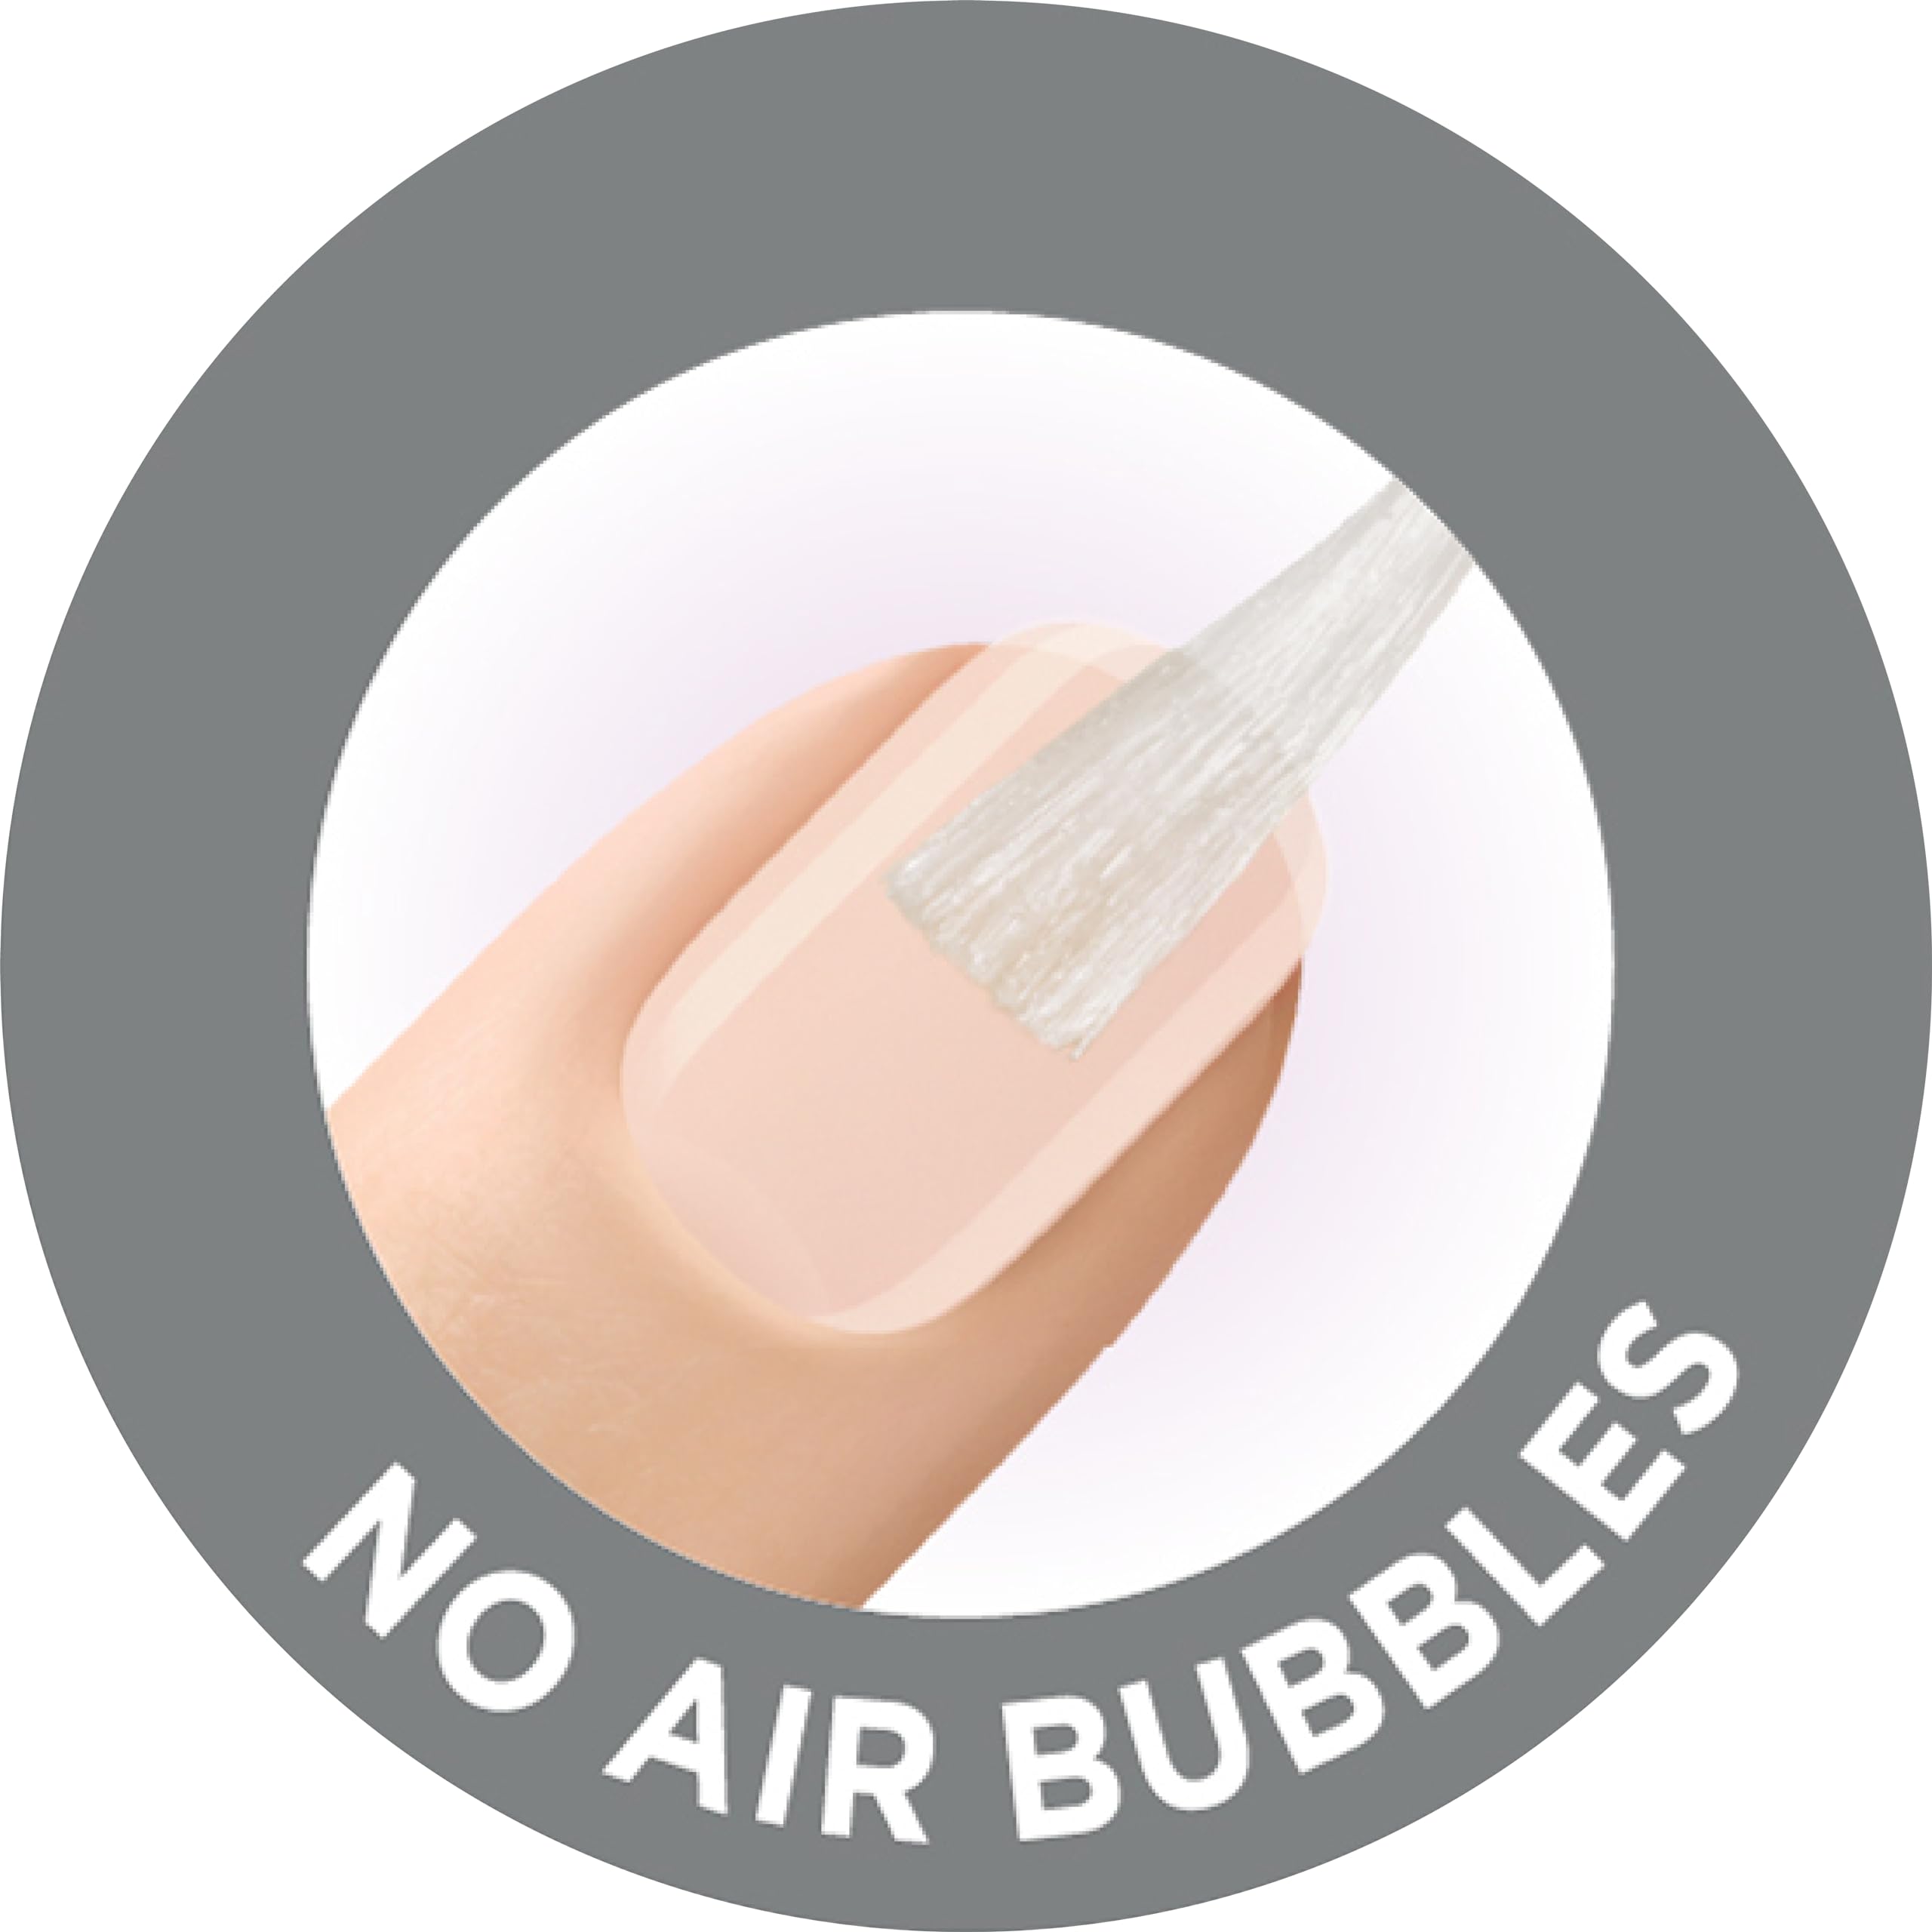 Nailene Ultra Quick Nail Glue, 0.10 oz – Durable, Easy to Apply False Nail Glue – Repairs Natural Nails – Quick-Drying Nail Adhesive Lasts Up to 7 Days, 6 Pack